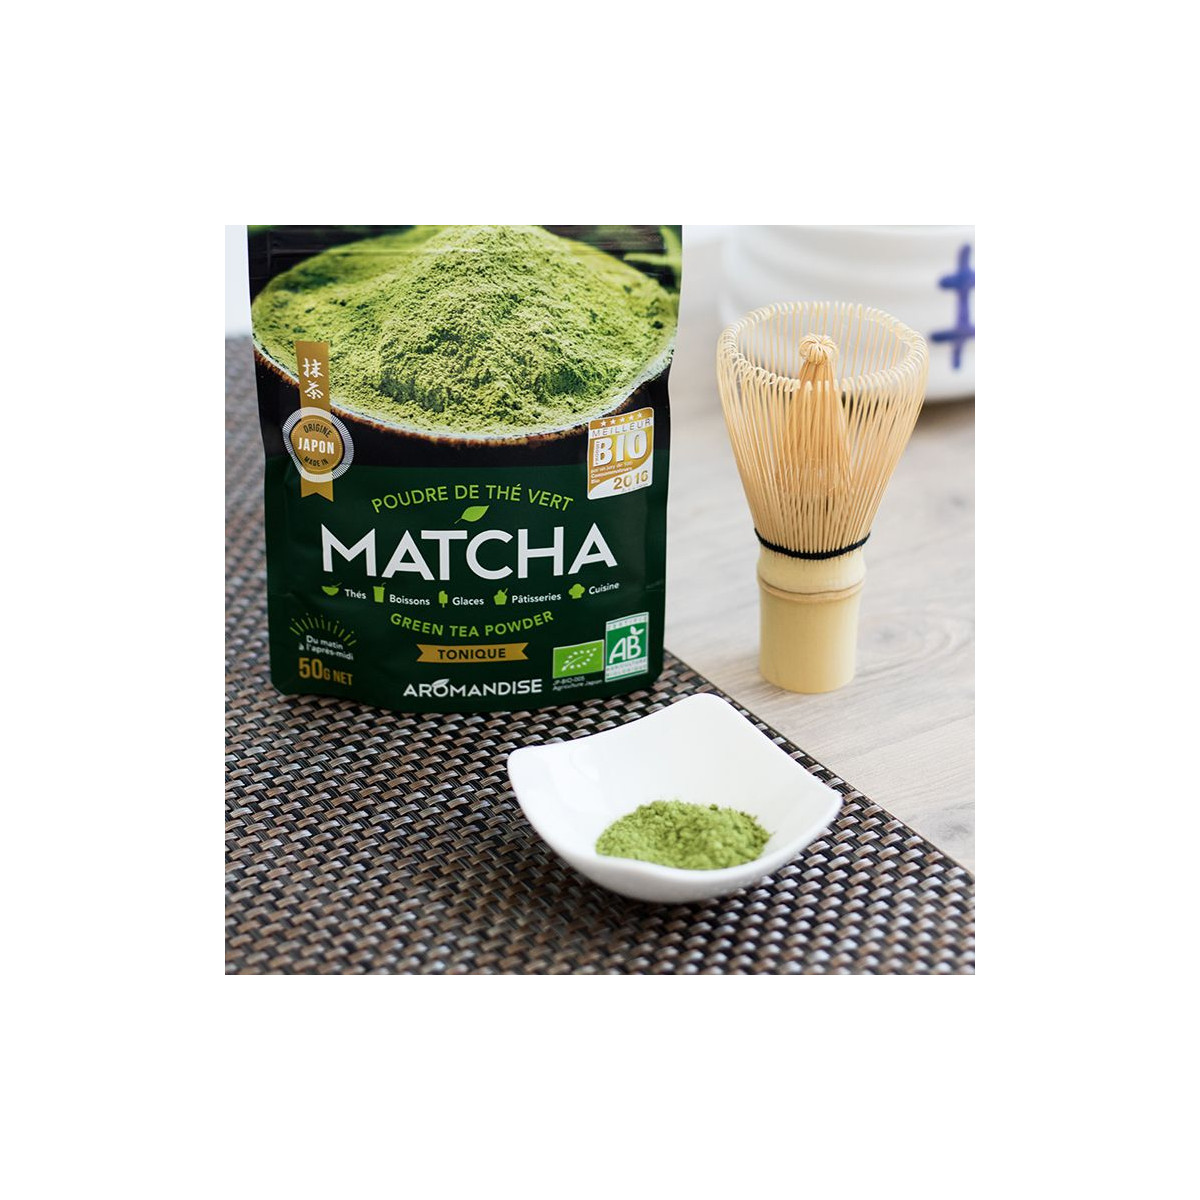 Matcha - poudre de thé du Japon 50 grammes - Café du Jour thé en vrac